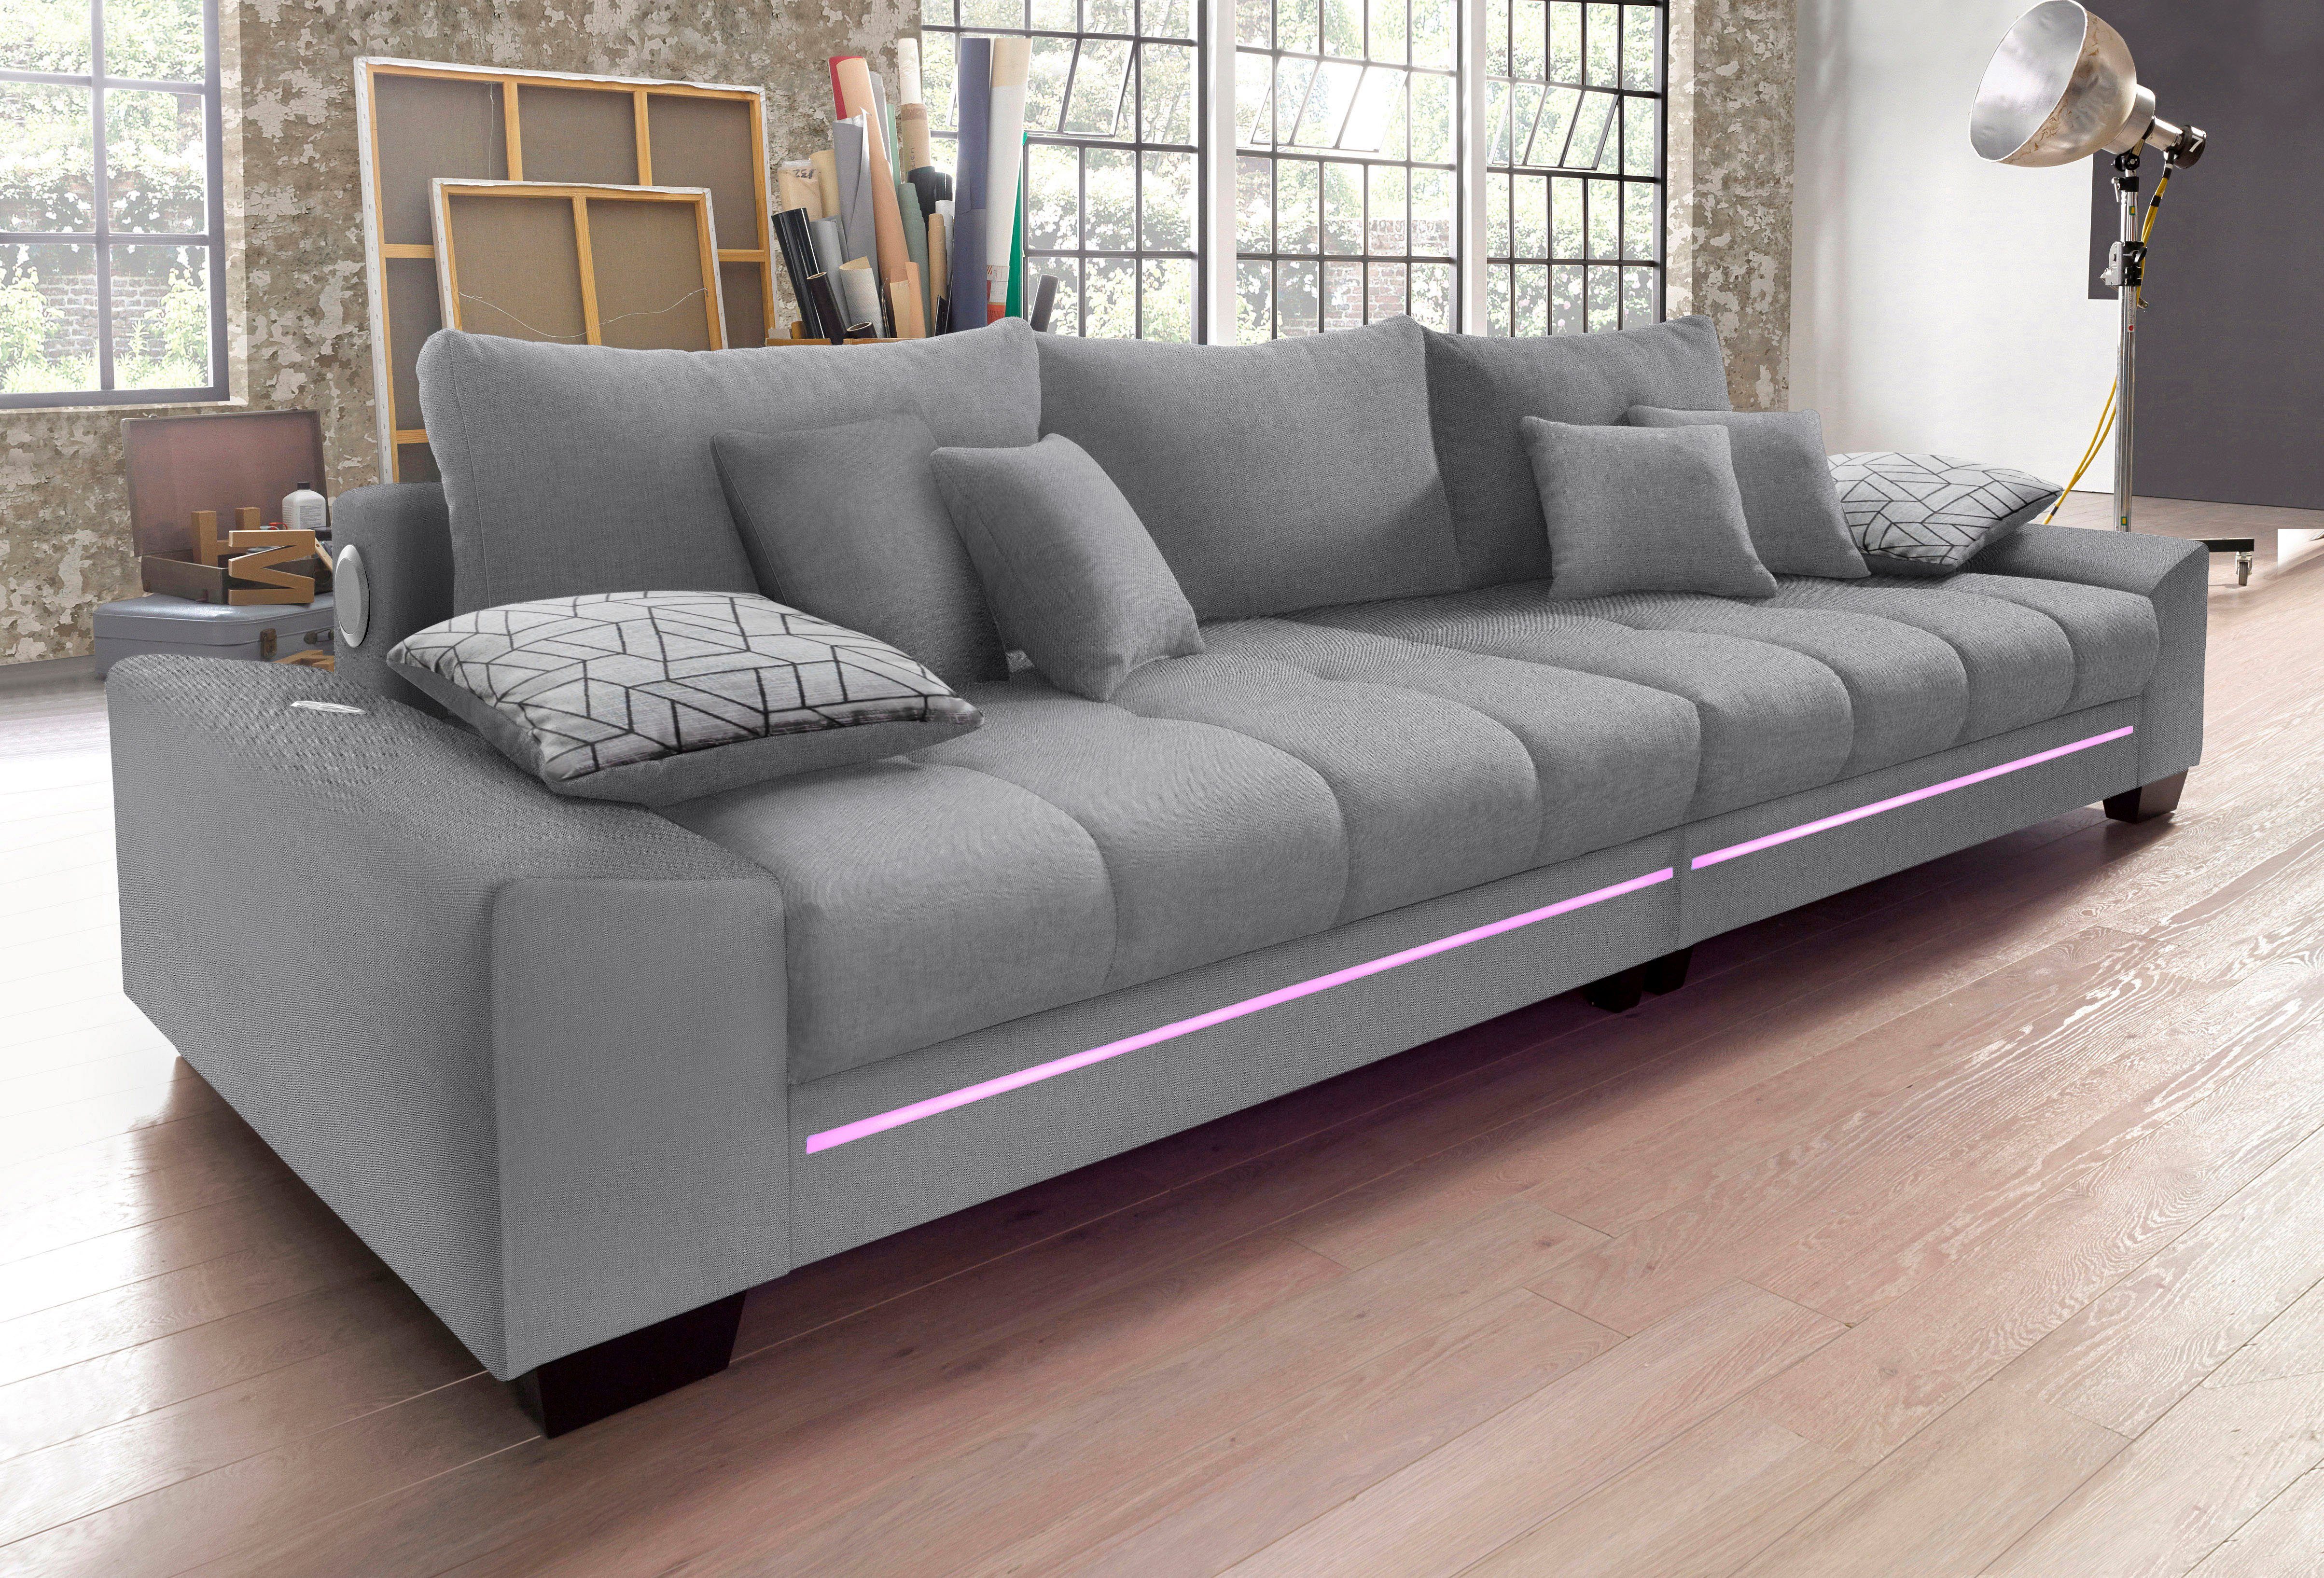 Mr. Couch Megabank naar keuze met koudschuim (140 kg belasting/zitting), met rgb-ledverlichting en bluetooth-geluidssysteem